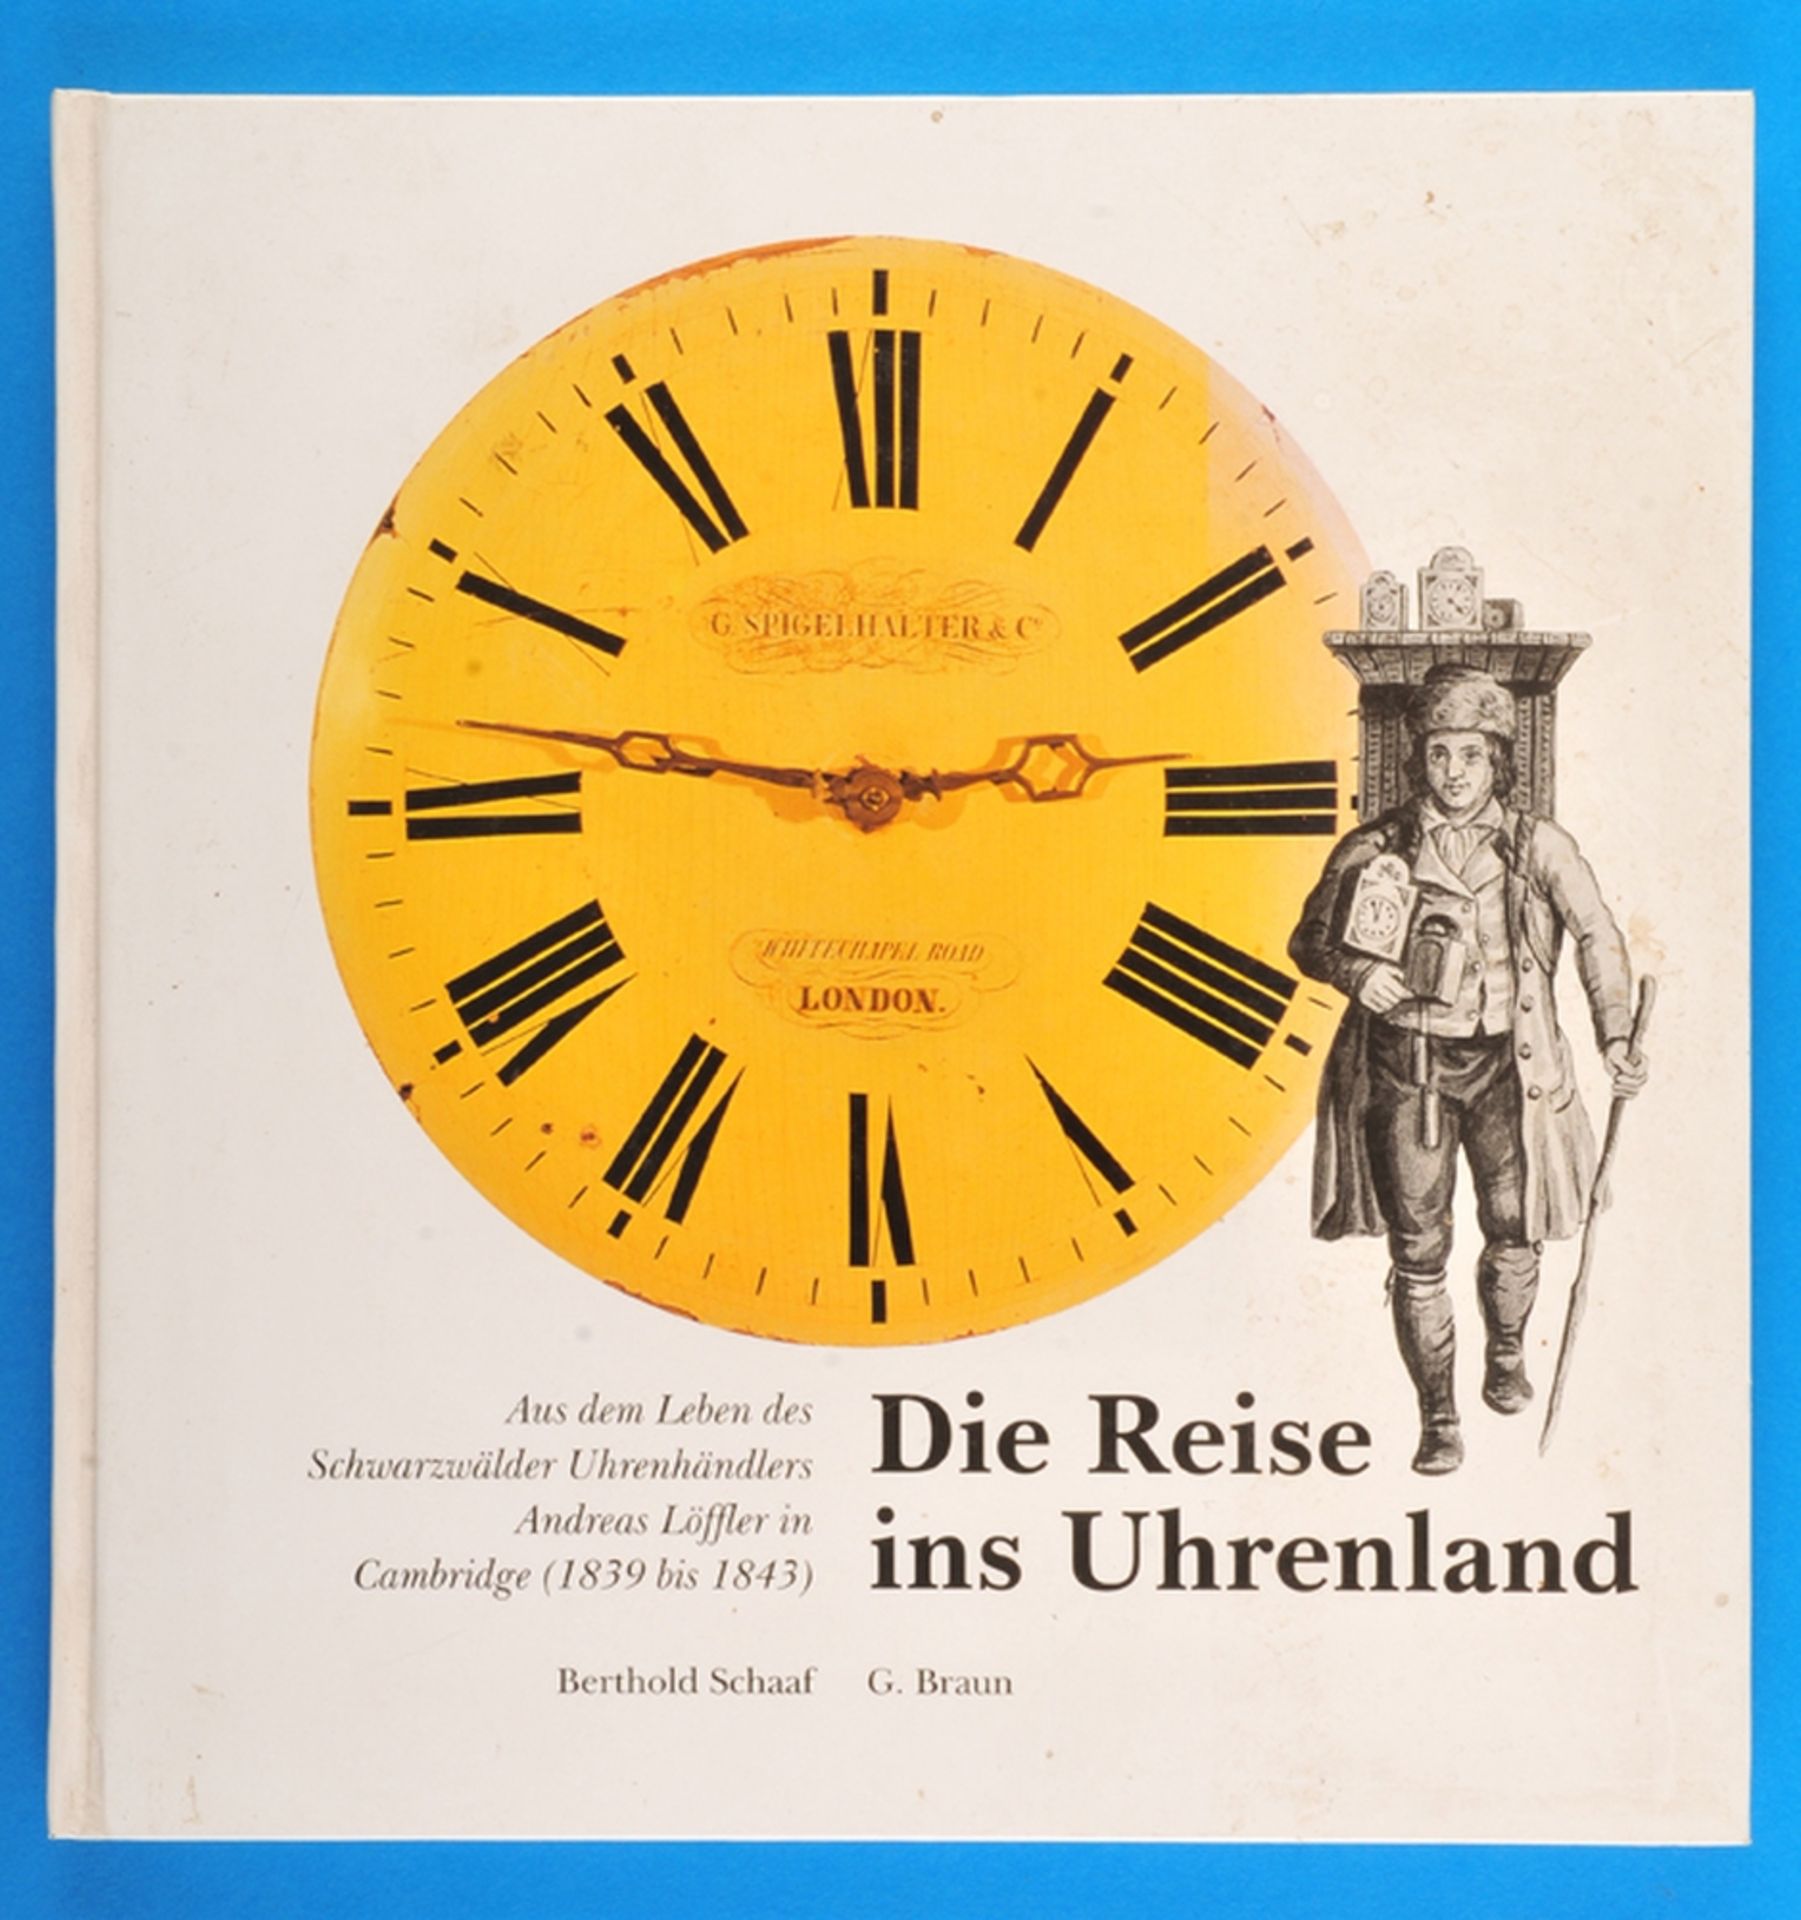 Berthold Schaaf, Die Reise ins Uhrenland, Aus dem Leben des Schwarzwälder Uhrenhändlers Andreas Löff